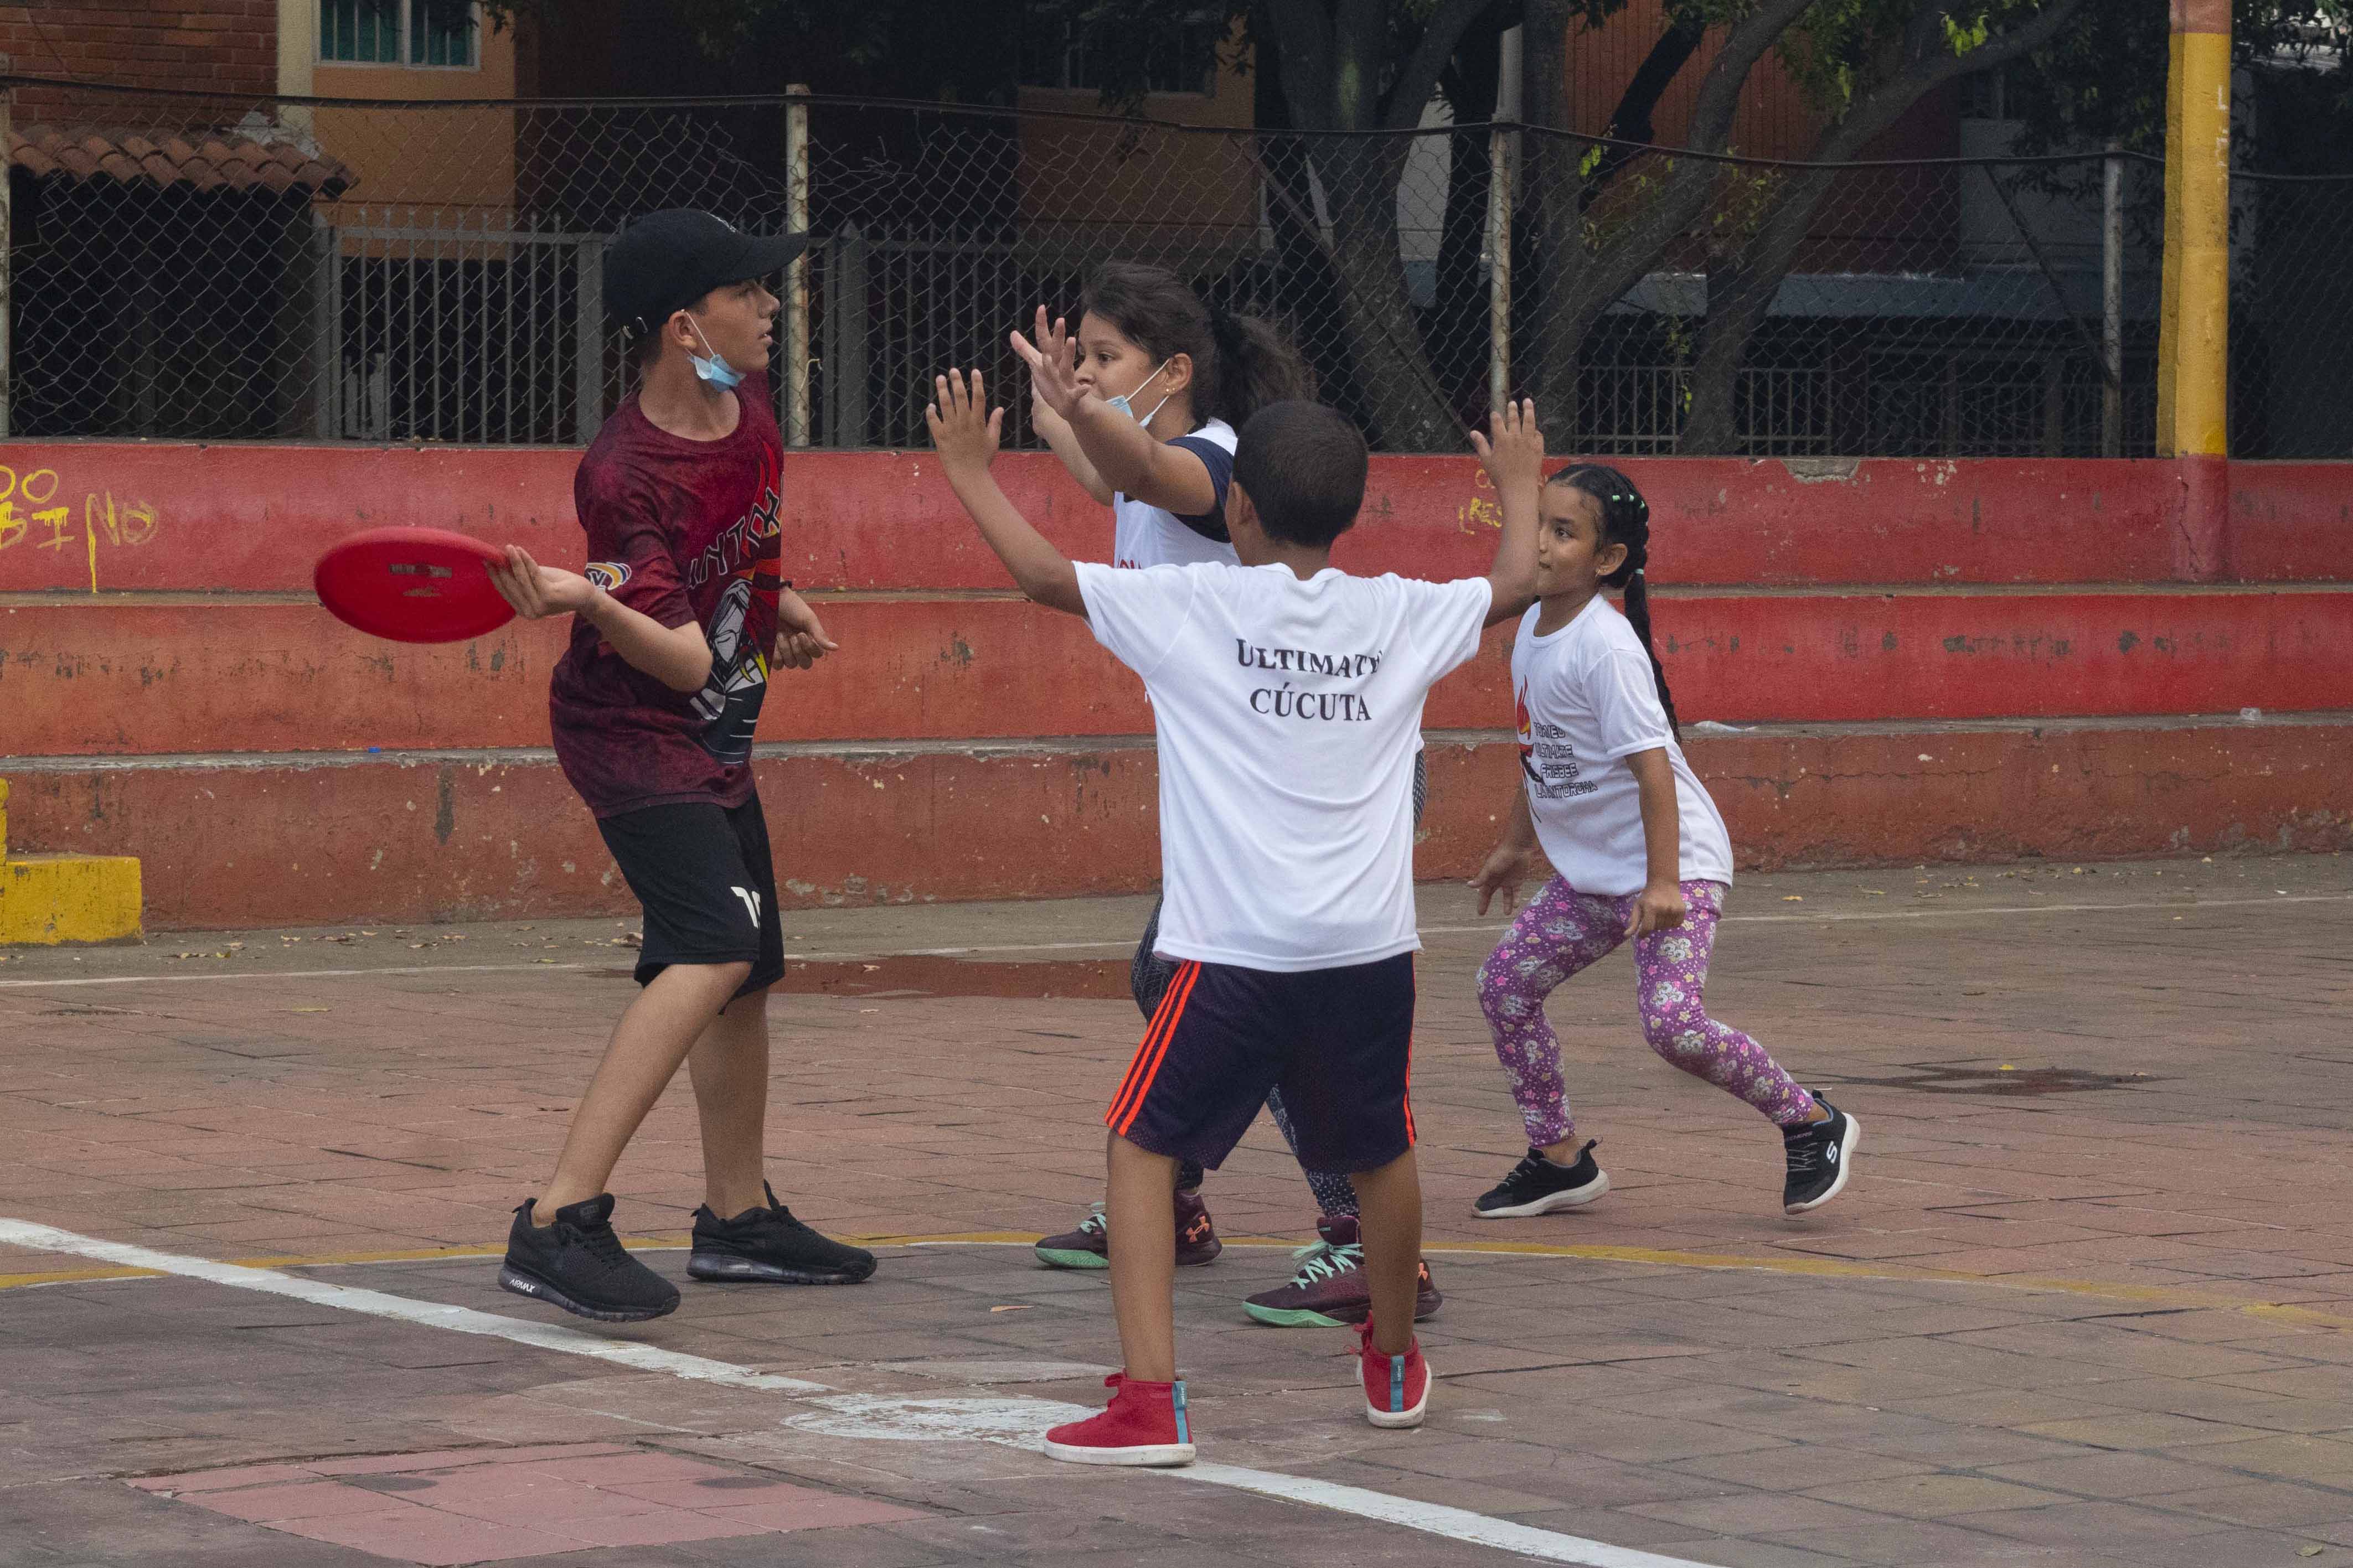 La meta es poder masificar el deporte y lograr hacer intercomunales para incentivar los procesos junior en la ciudad. Foto: @cirocastillo22